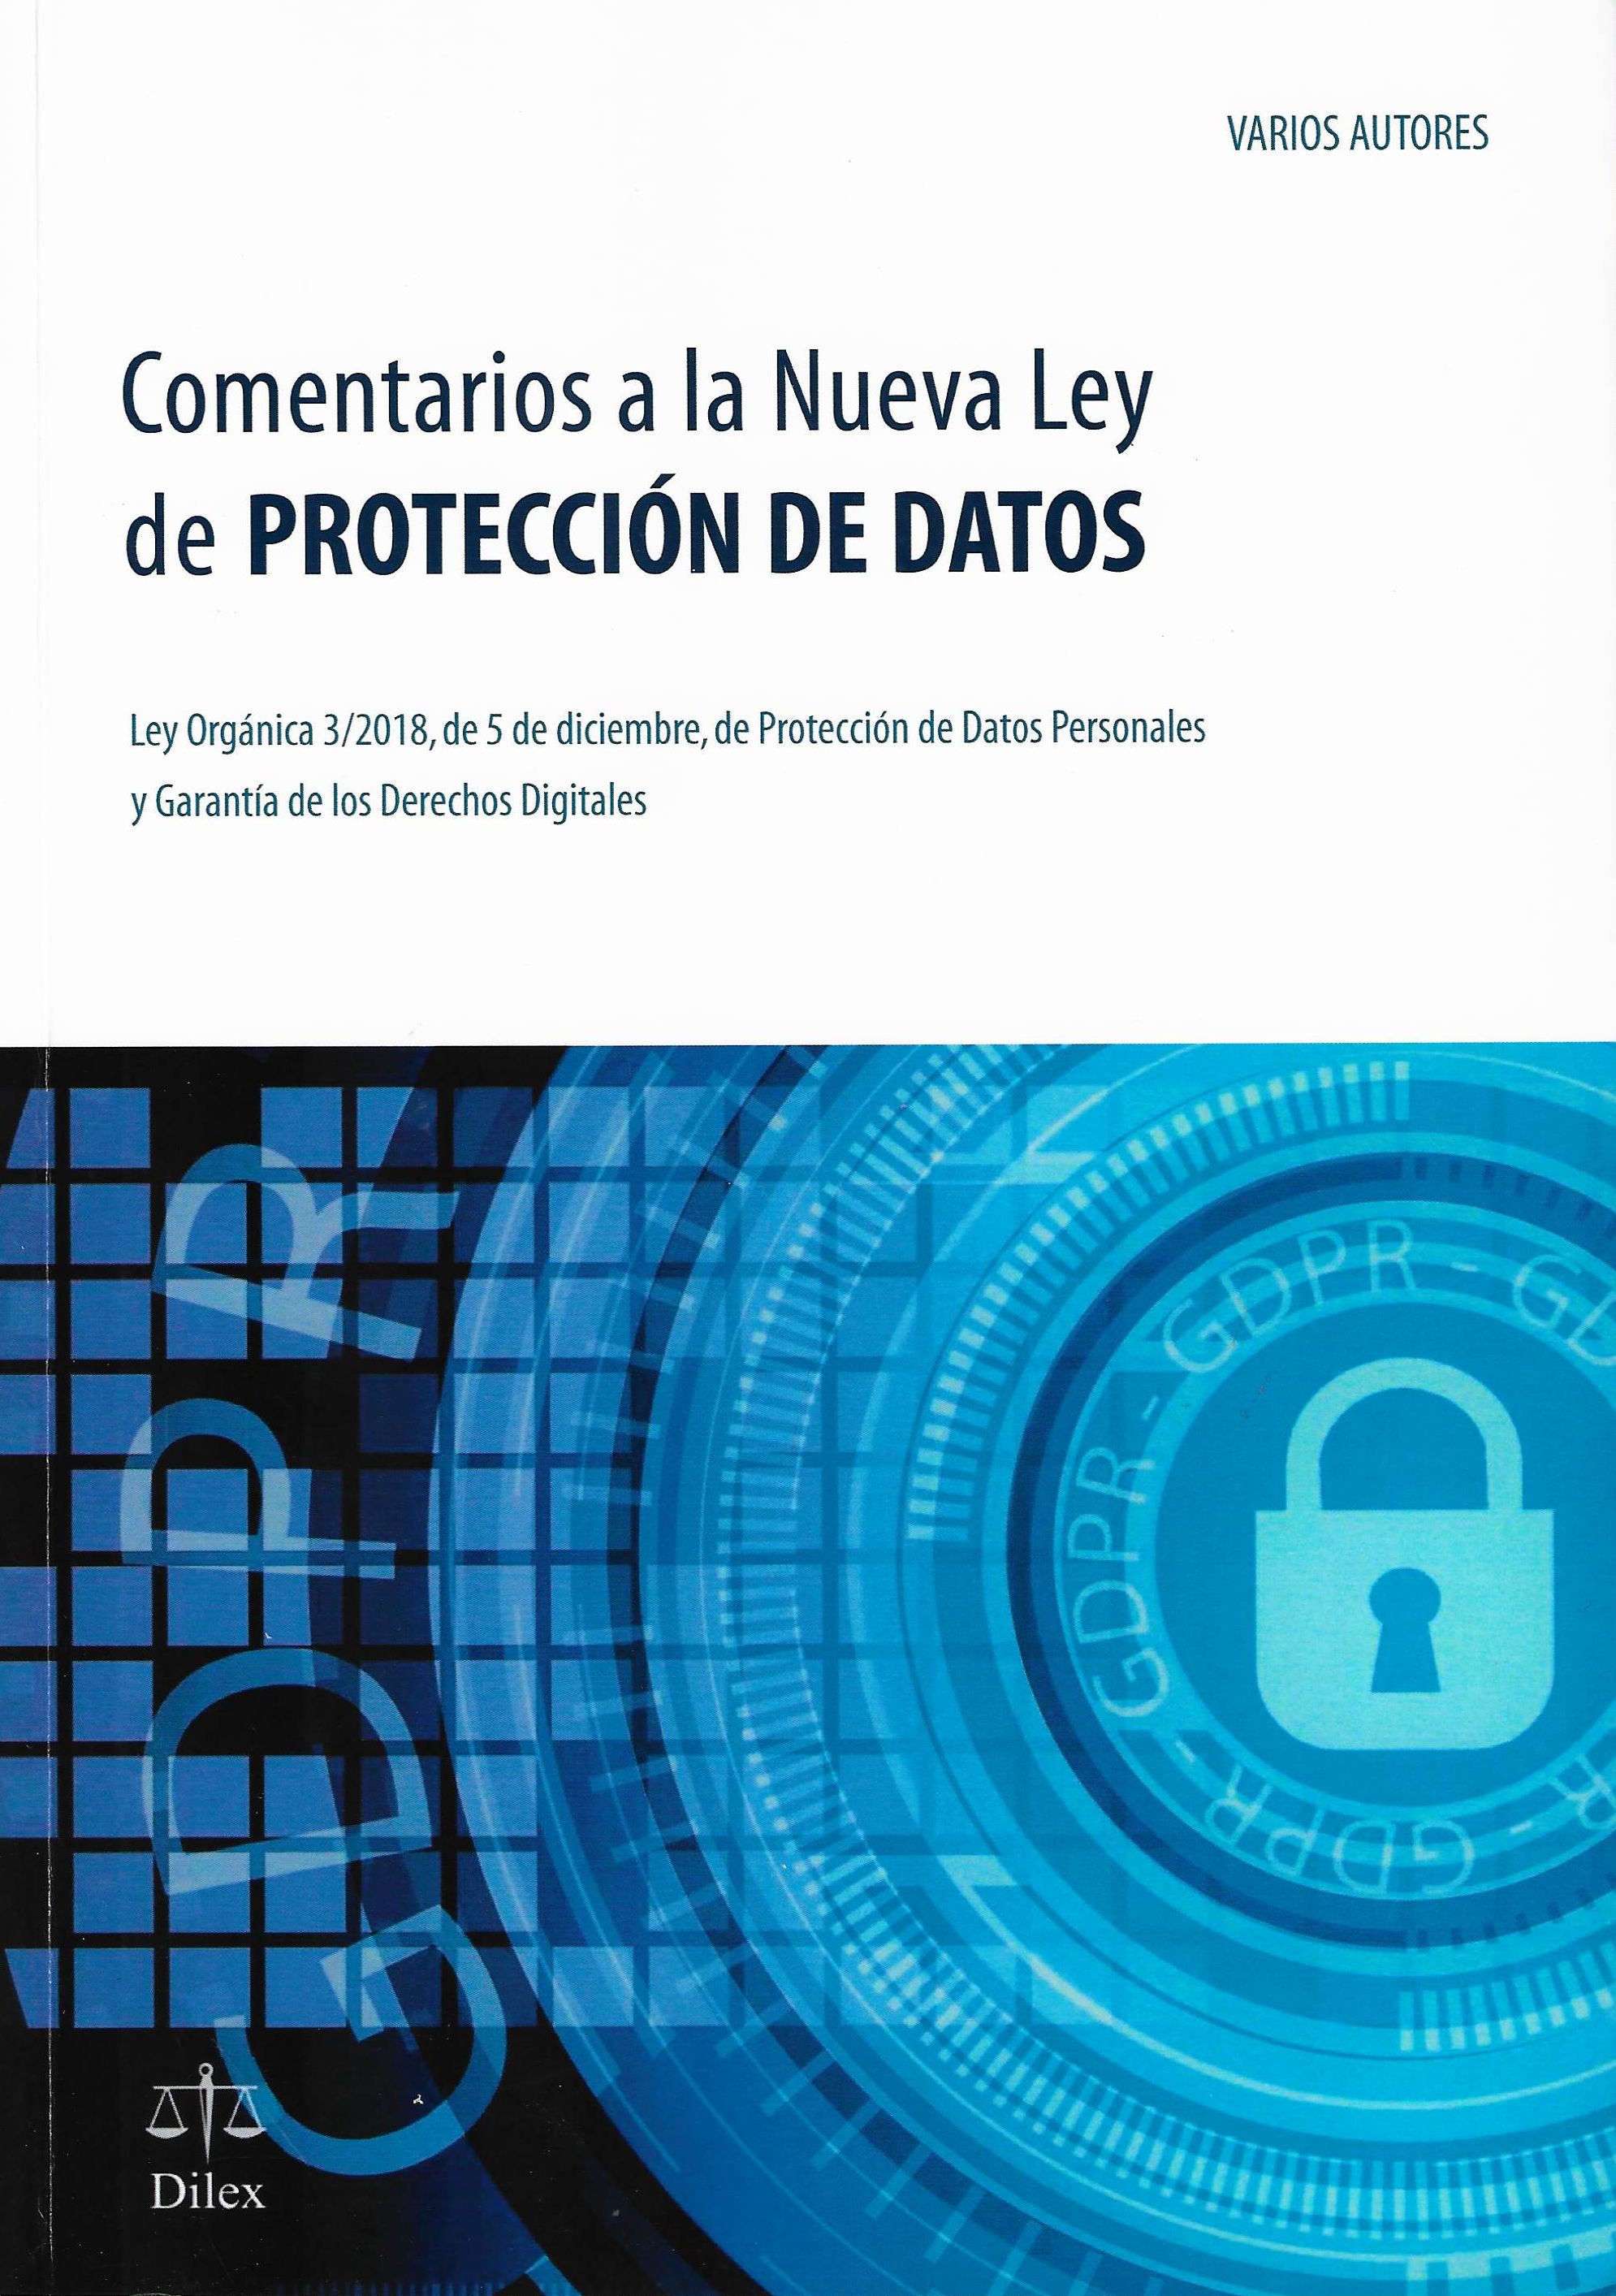 Imagen de portada del libro Comentarios a la Nueva Ley de Protección de Datos